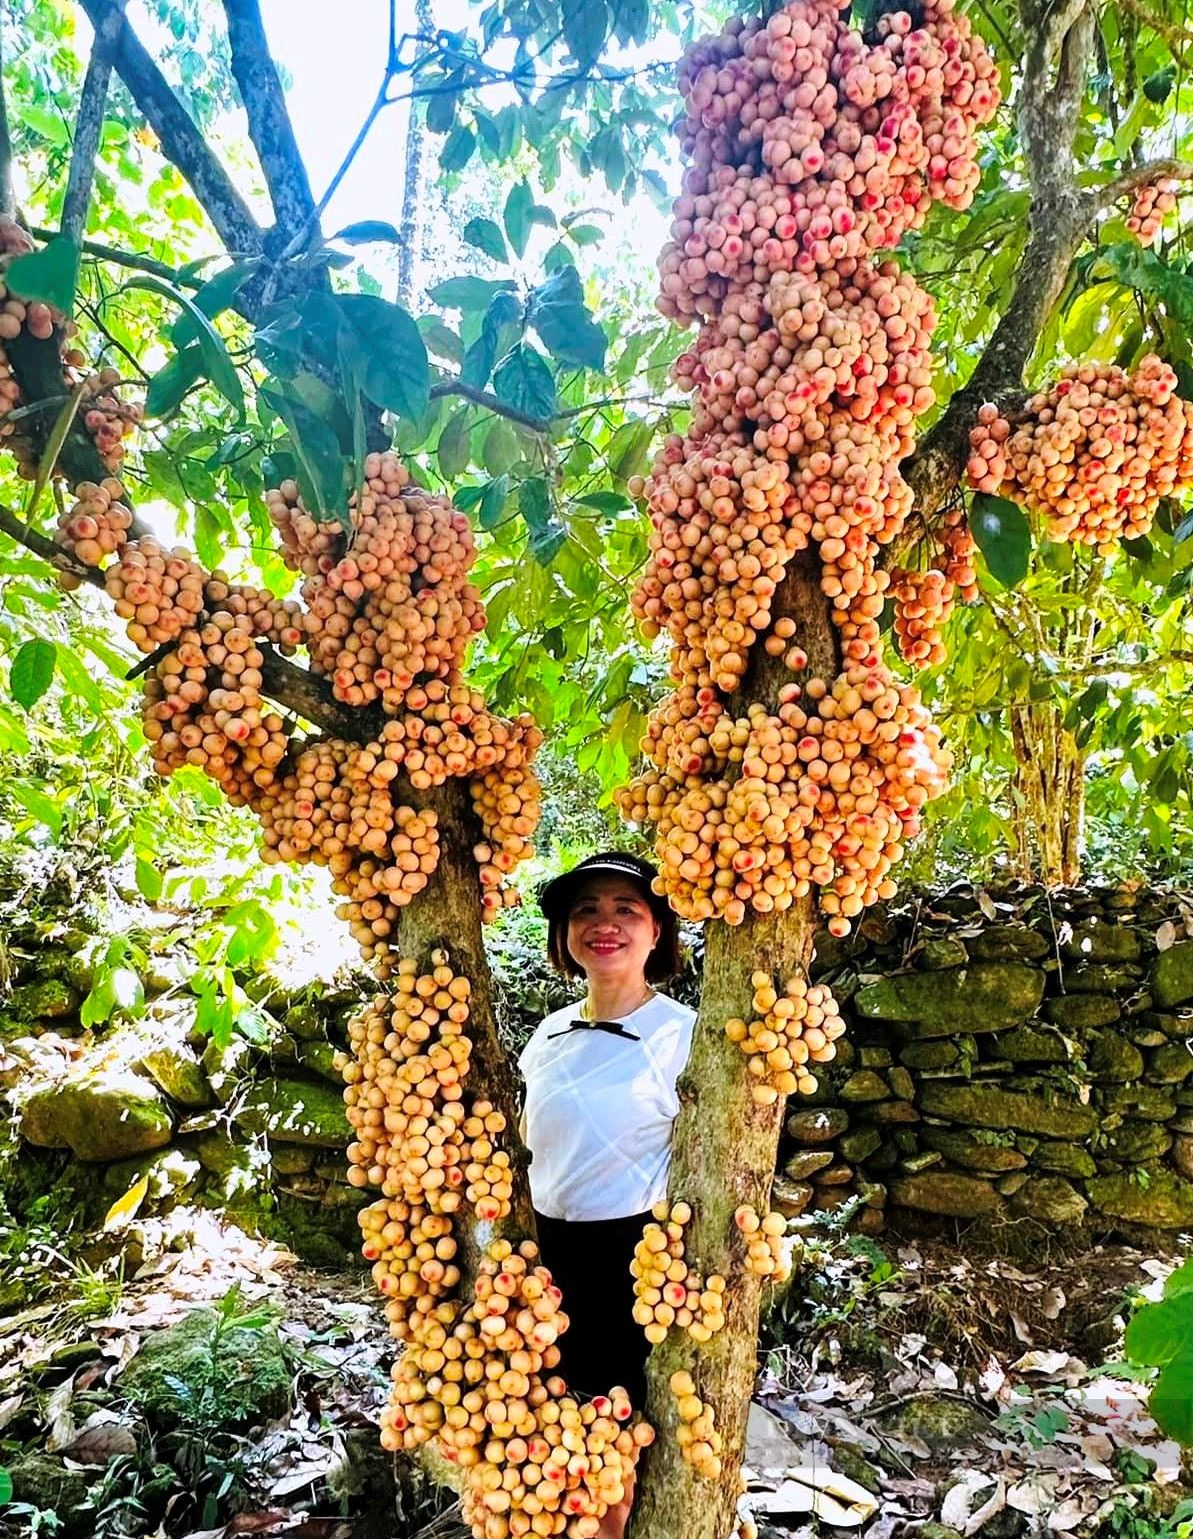 Về làng cổ hàng trăm năm tuổi ở Quảng Nam chiêm ngưỡng vườn trái cây đủ màu xanh, đỏ, tím, vàng - Ảnh 9.